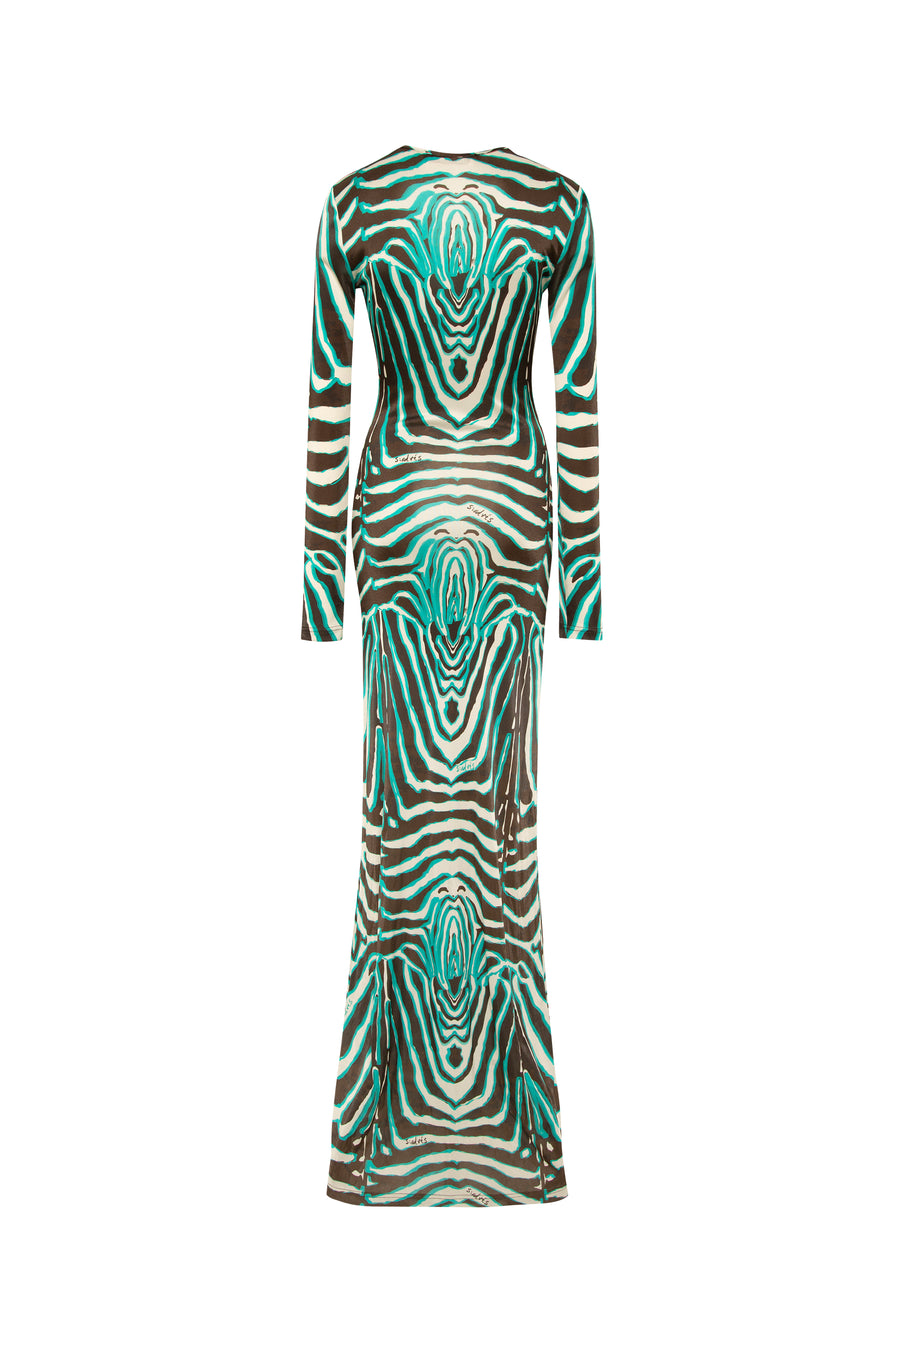 MAGY - Tie-front zebra printed maxi dress